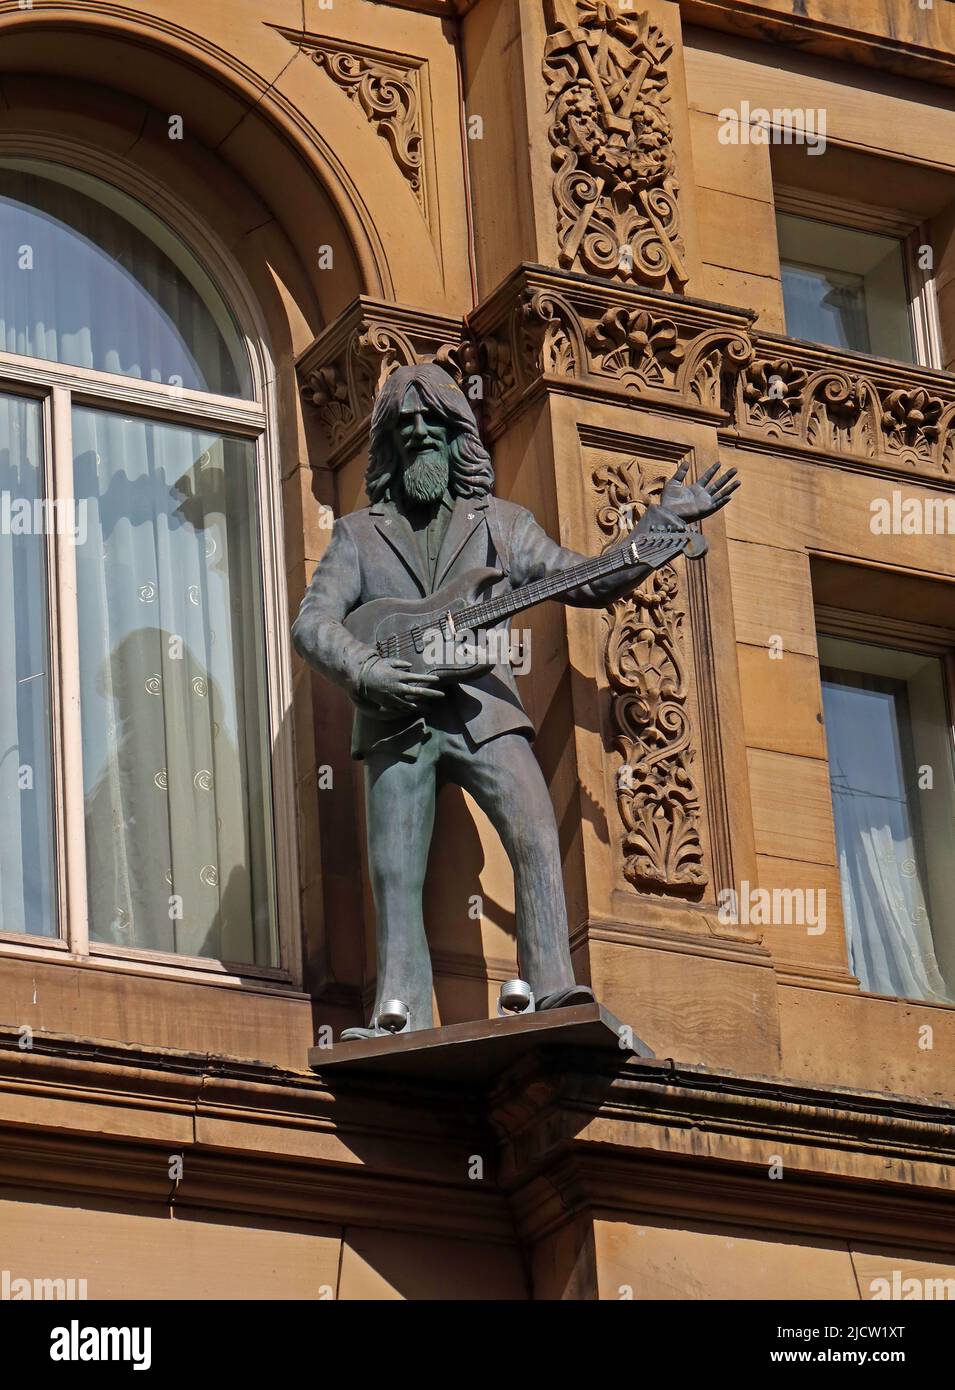 George Harrison - les statues de Liverpool Beatle - The Fab four, autour de l'extérieur de Hard Day's Night Hotel, Central Buildings, N John St, Liverpool L2 6RR Banque D'Images